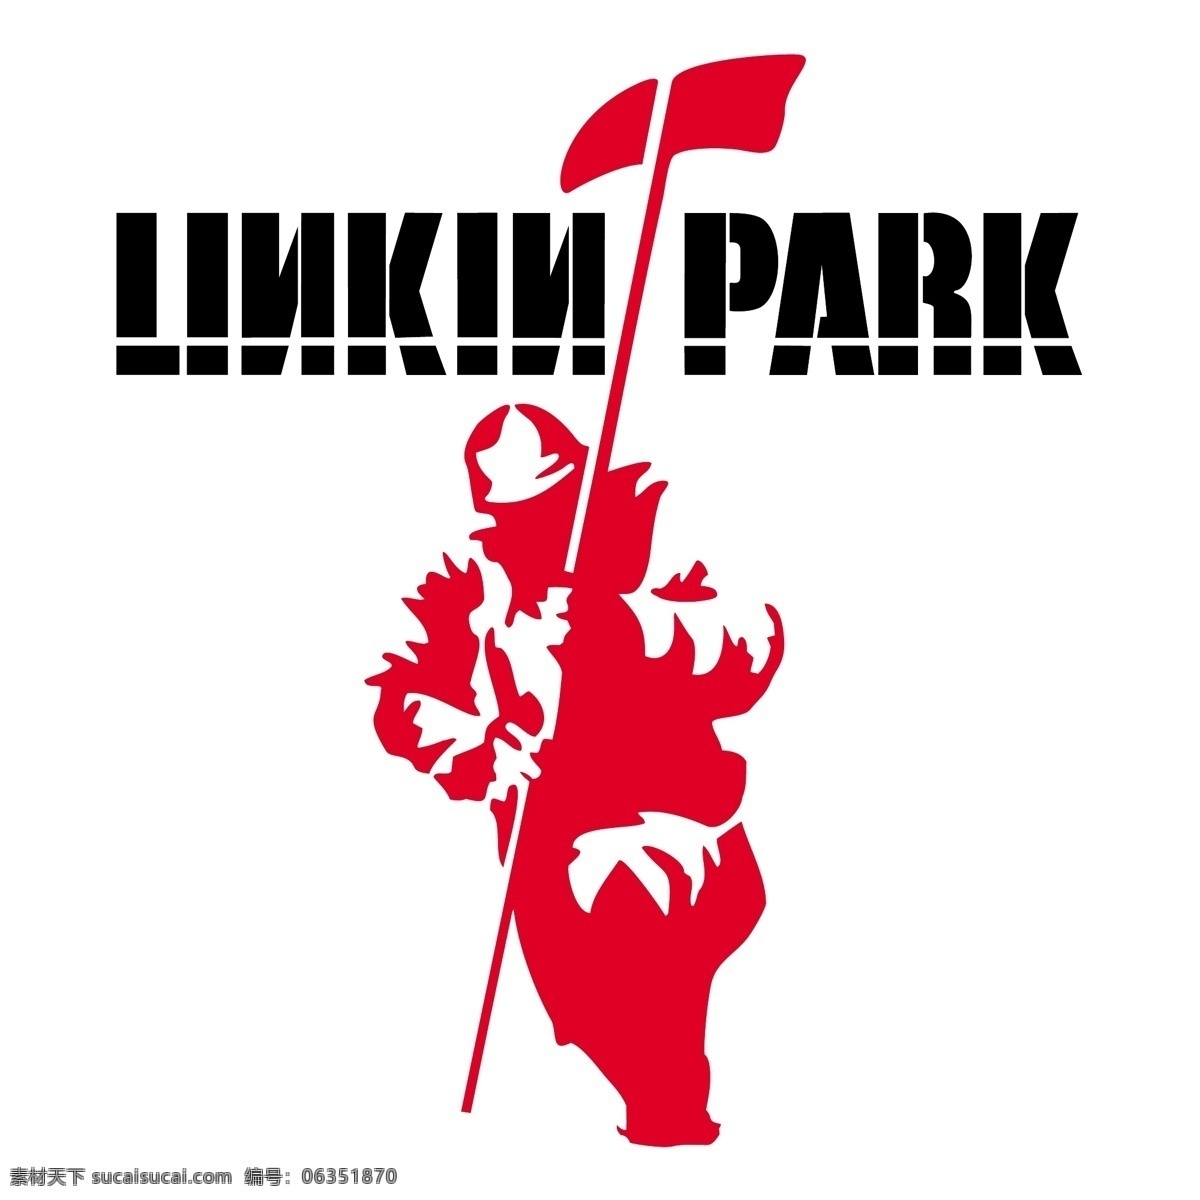 林肯 公园 免费 标志 标识 psd源文件 logo设计